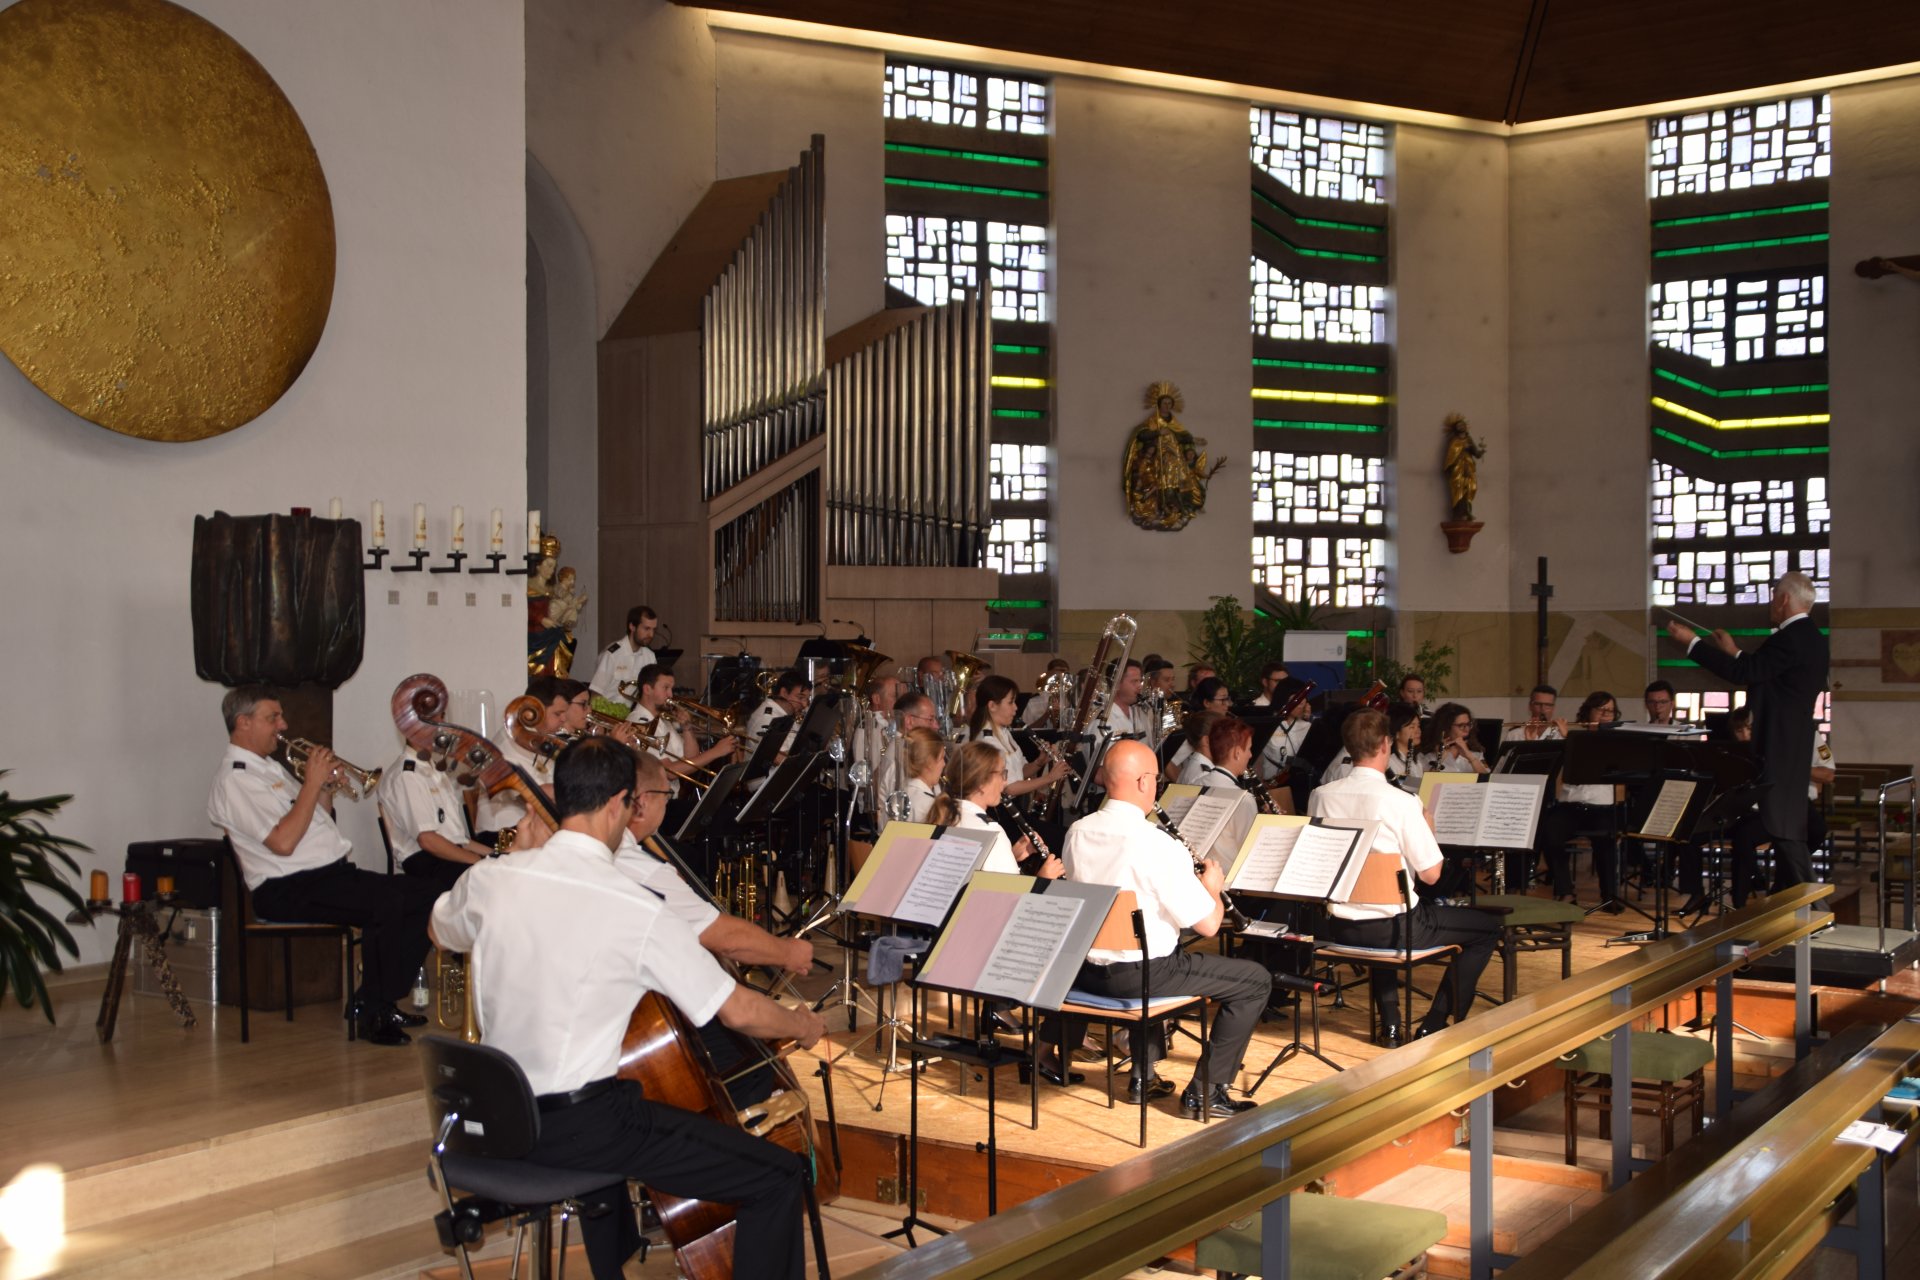 Dampfnudel oder Rahmstrudel als Highlights bei Konzert des Polizeiorchesters Bayern in Gebenbacher Pfarrkirche